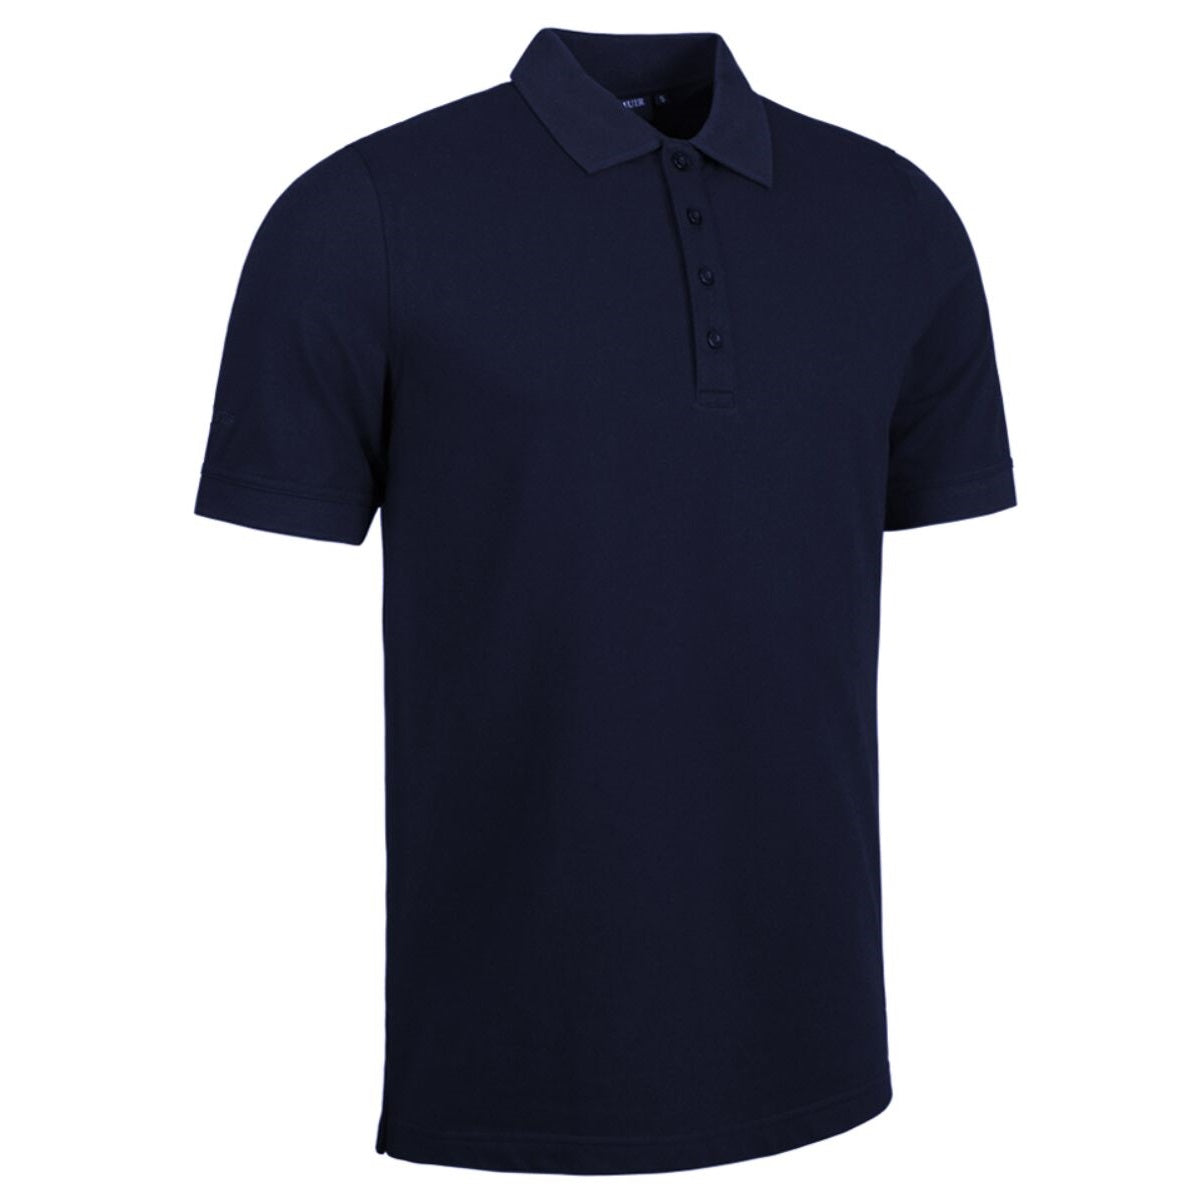 GLENMUIR Kinloch Cotton Pique Polo Shirt - Mens - Navy